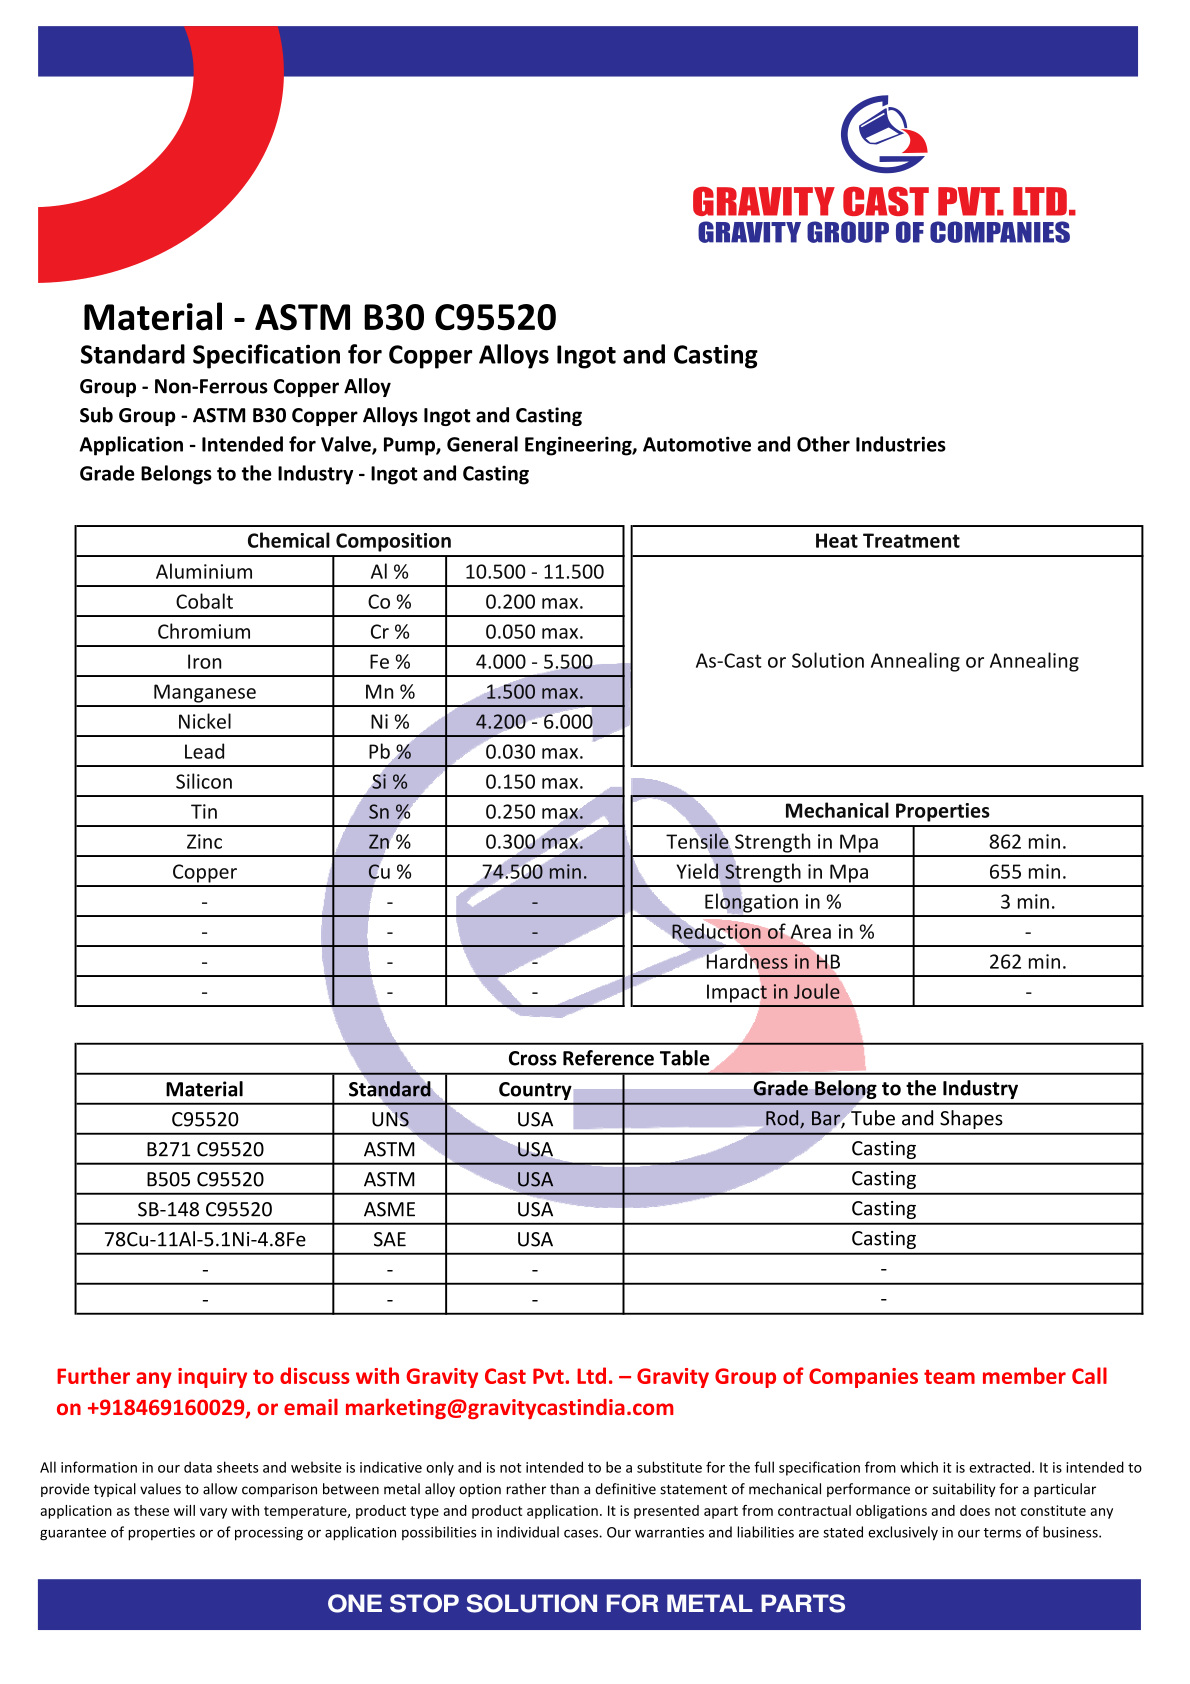 ASTM B30 C95520.pdf